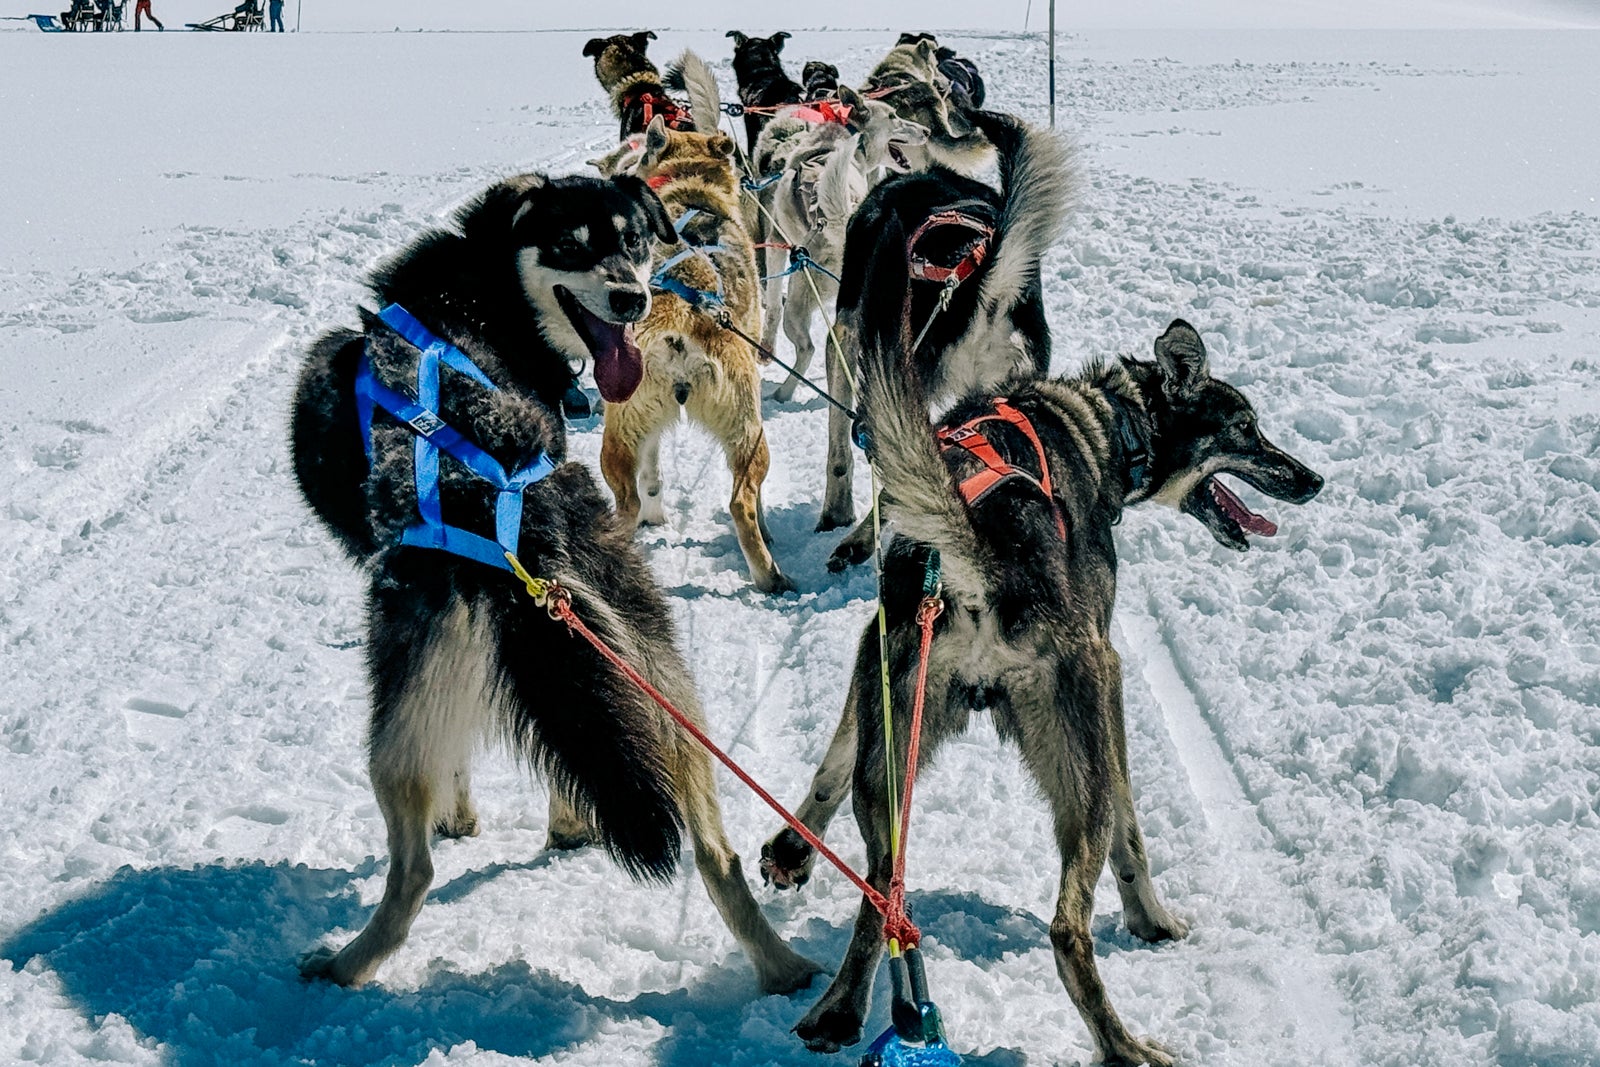 dog sled tours near denver